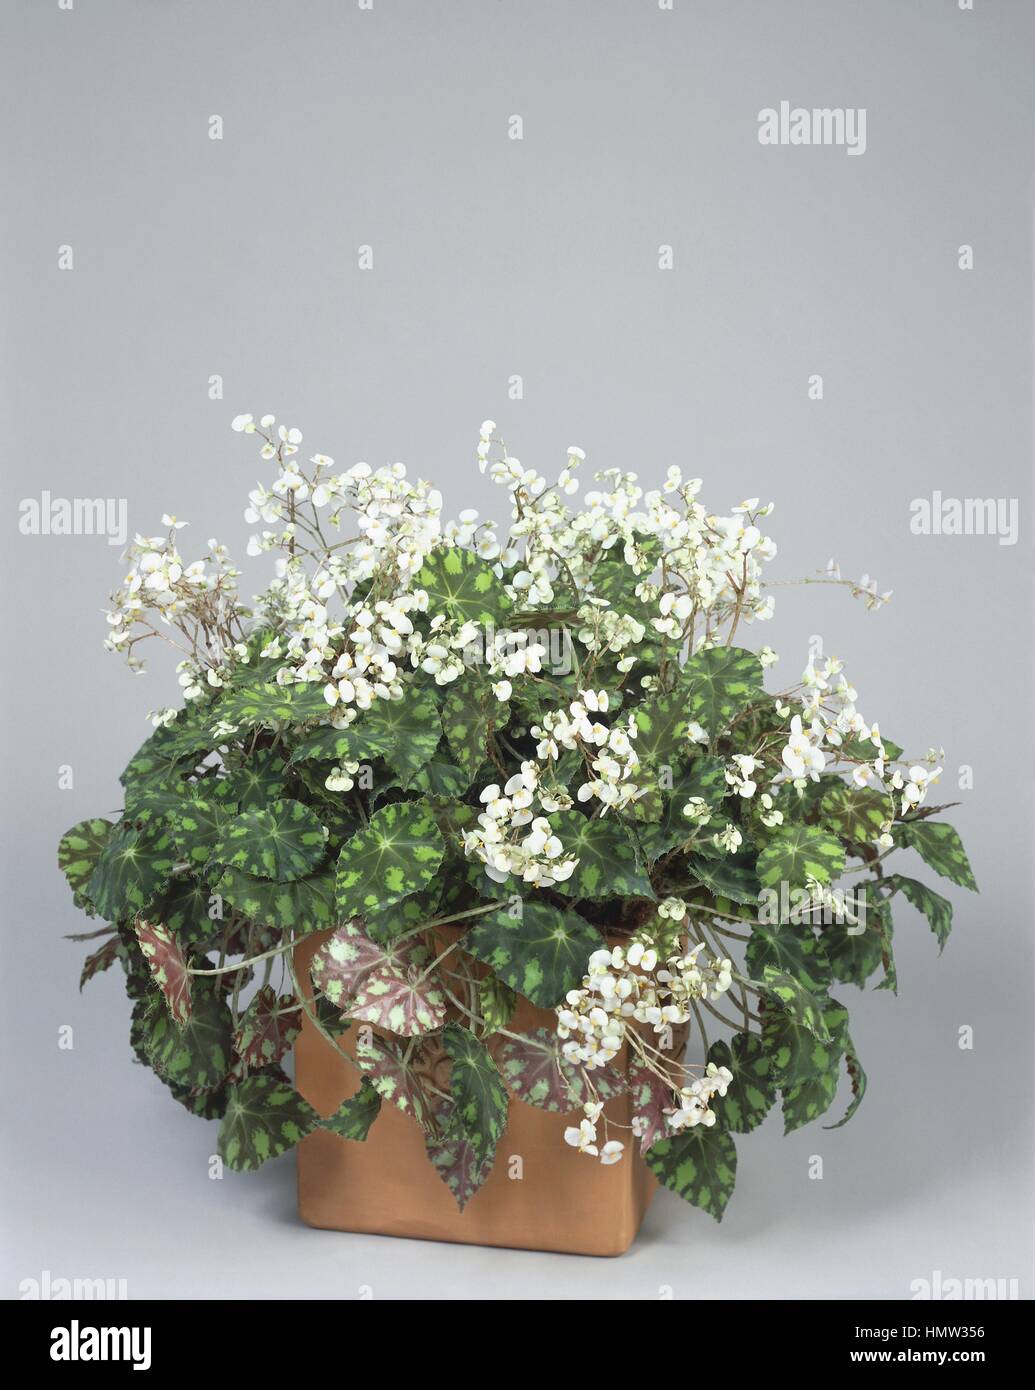 Houseplants - Begoniaceae. Begonia boweri 'Tiger' Stock Photo